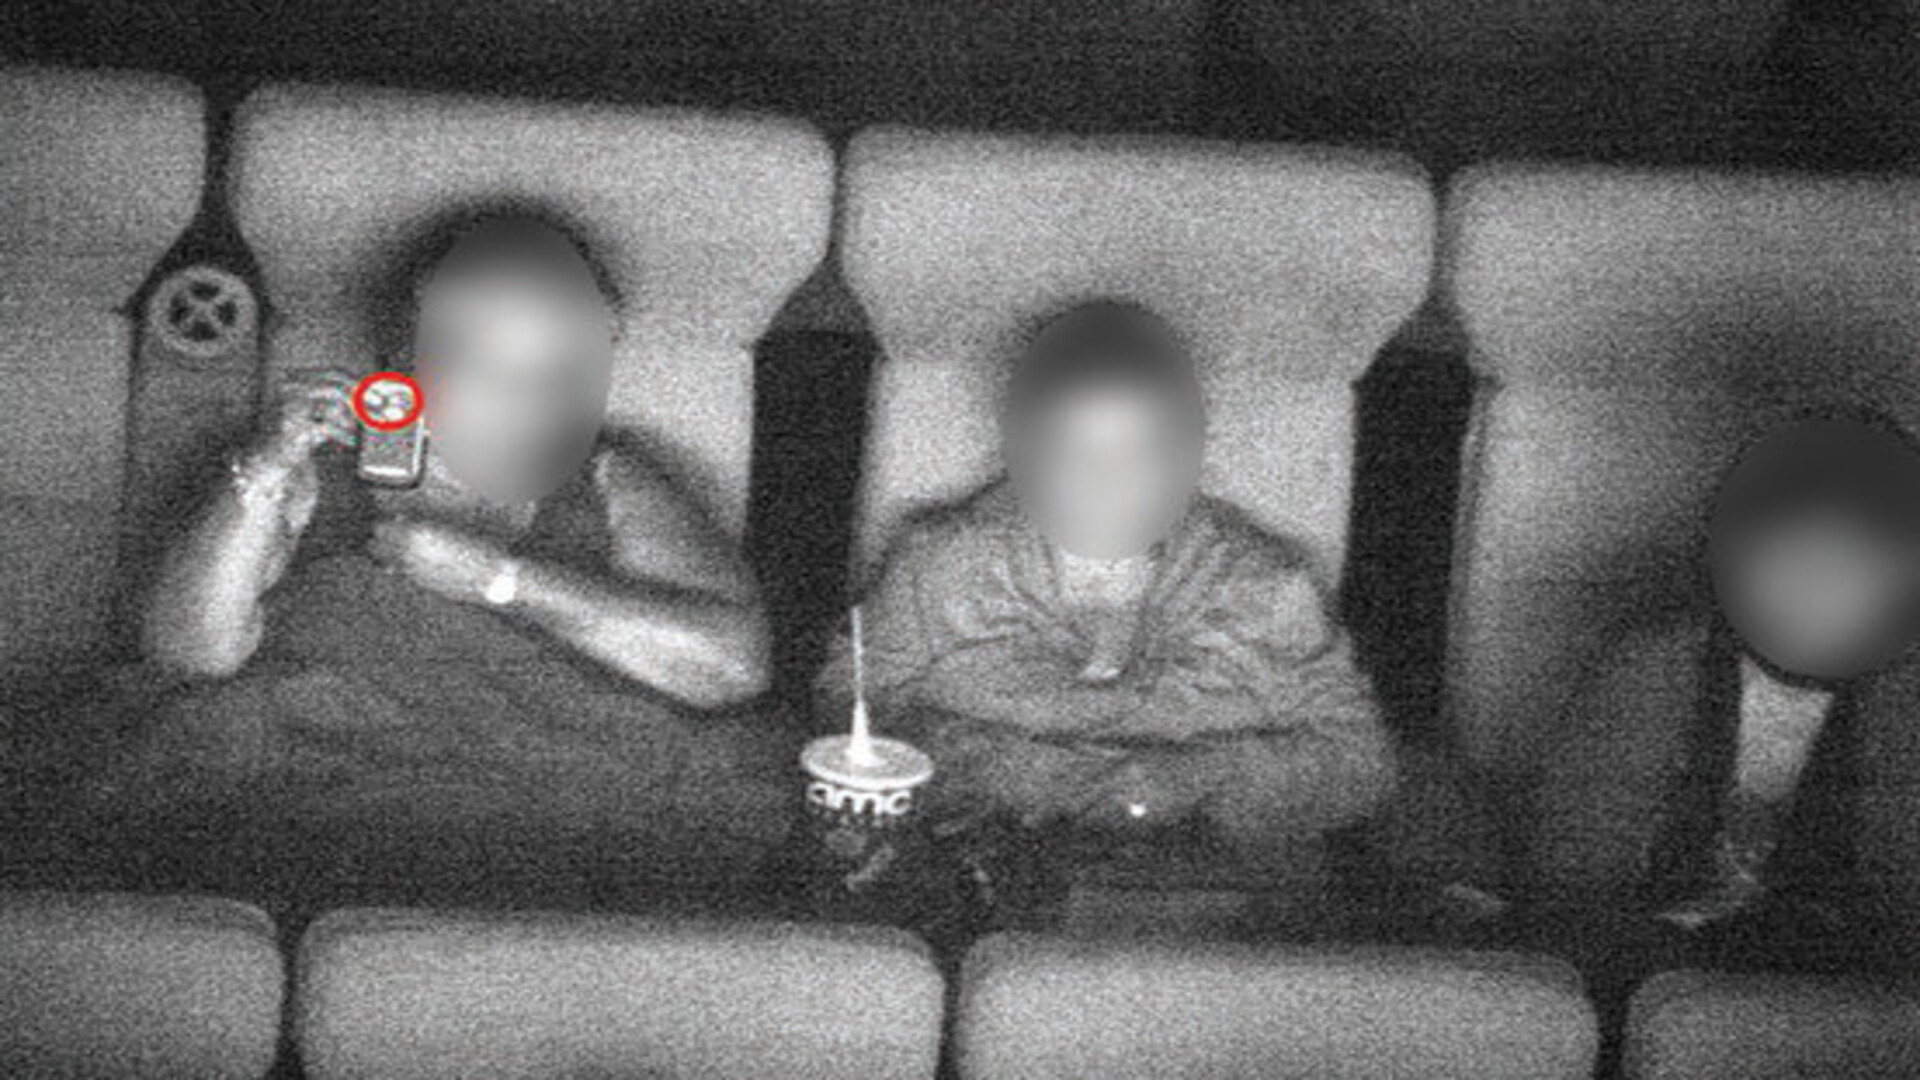 Recordando los cutres pirateos grabando con una videocámara en las salas de cine [GenB]